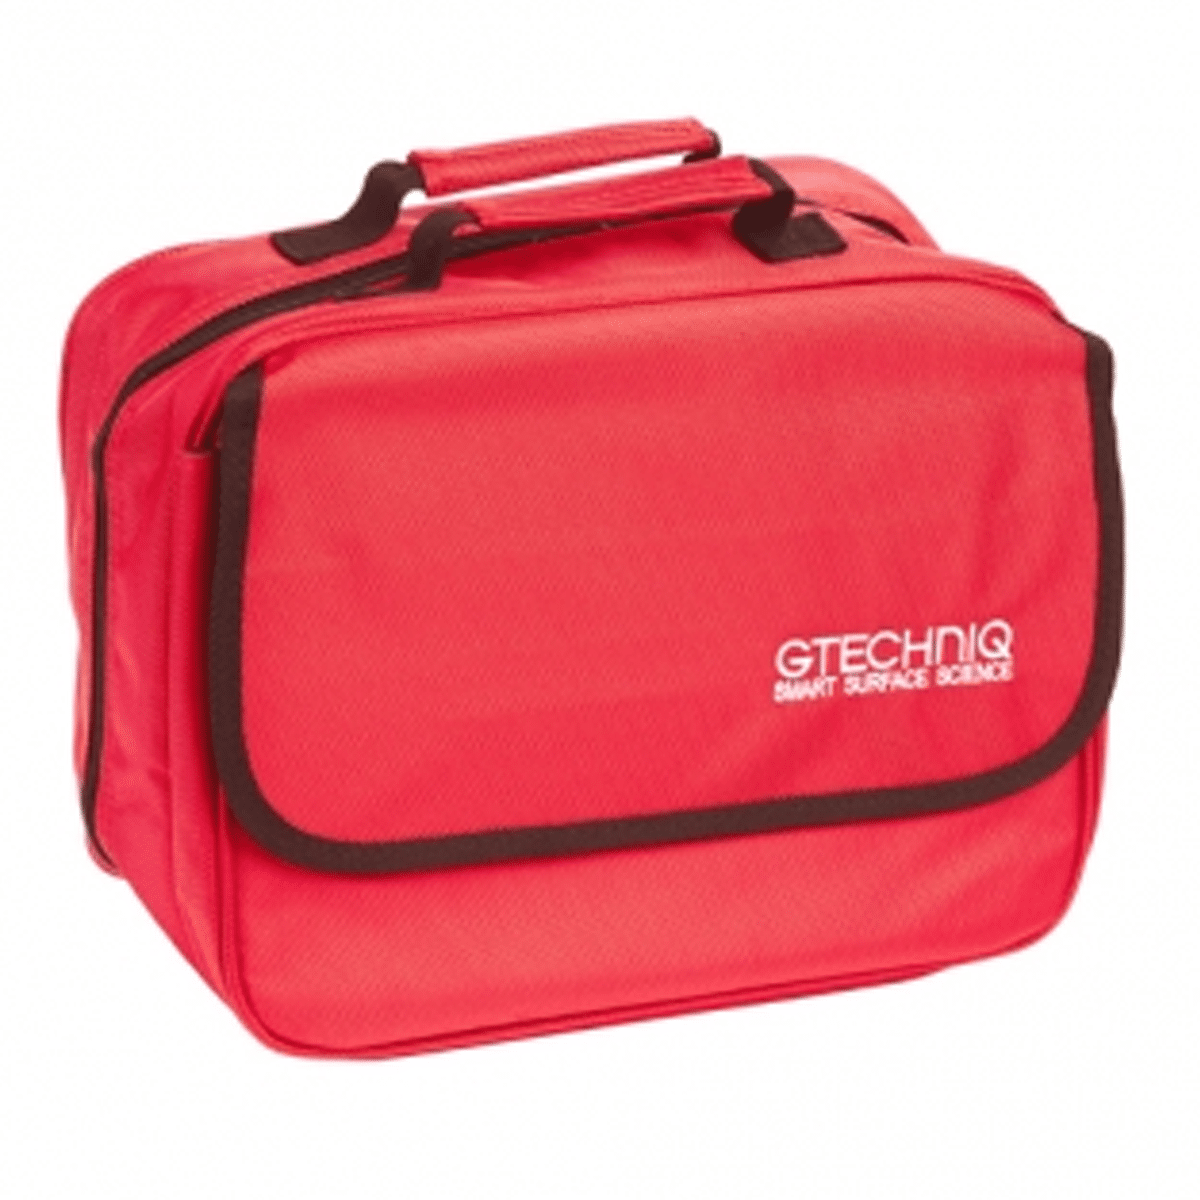 GTECHNIQ Branded Kit Bag Cols 18x18x18cm Torba na Kosmetyki Czerwona